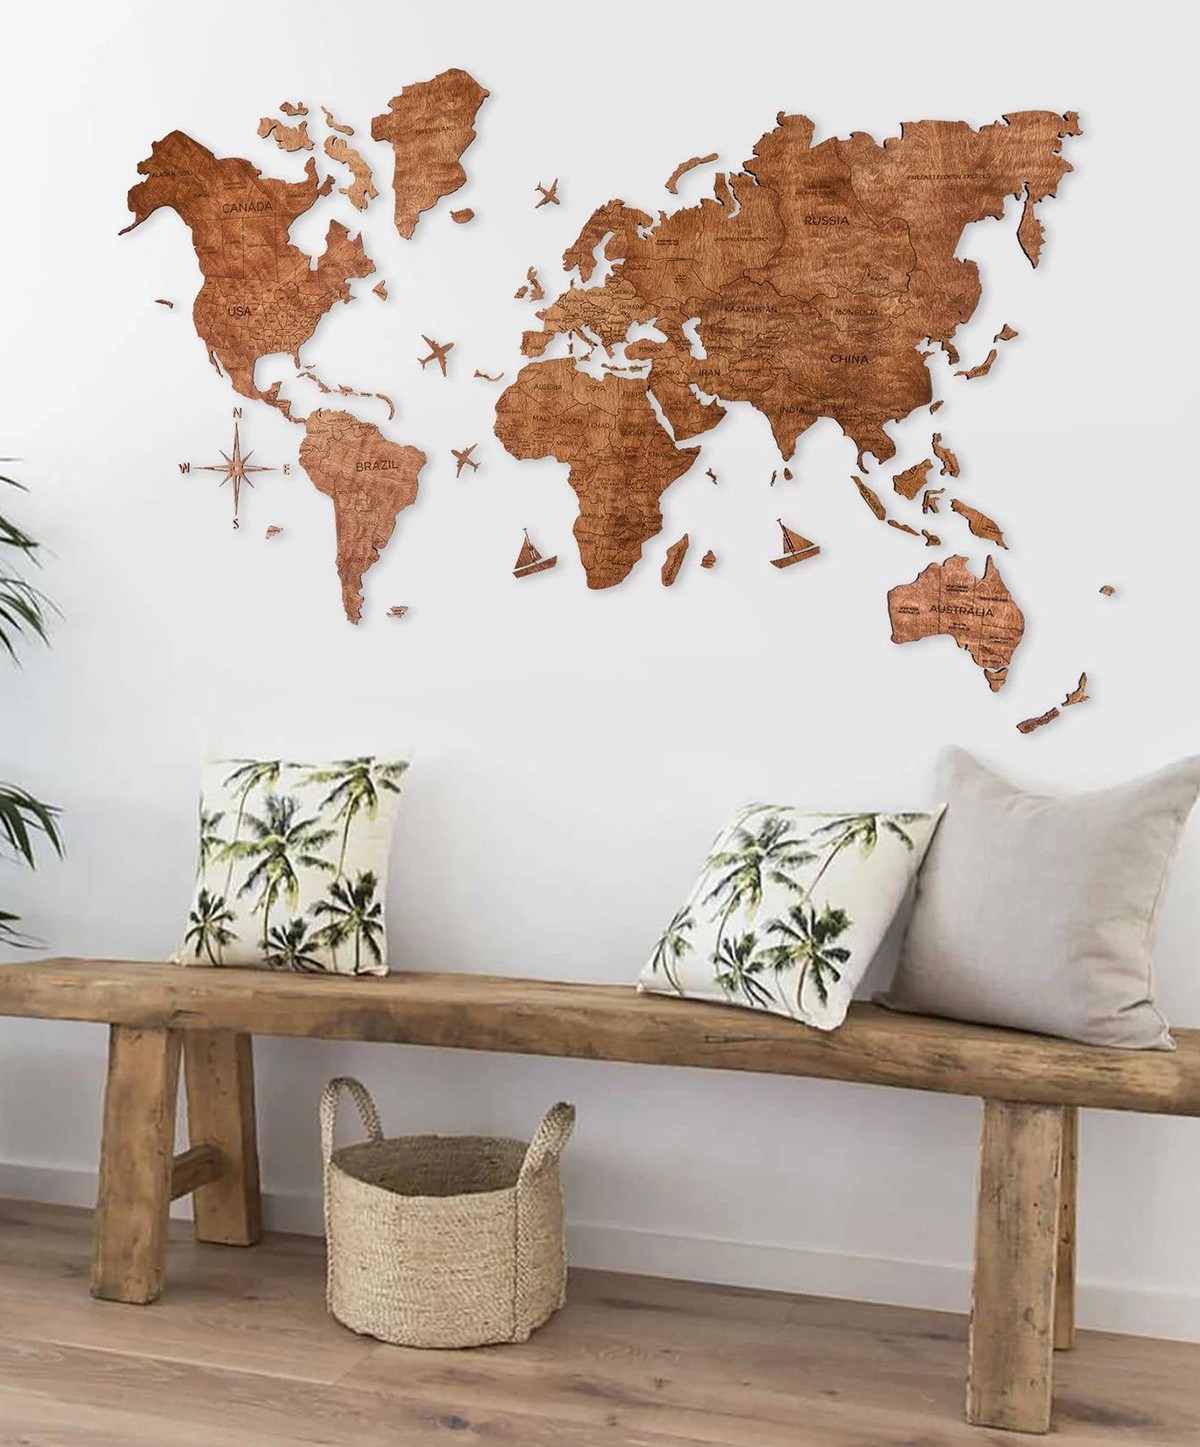 Pittura murale della mappa della quercia del mondo